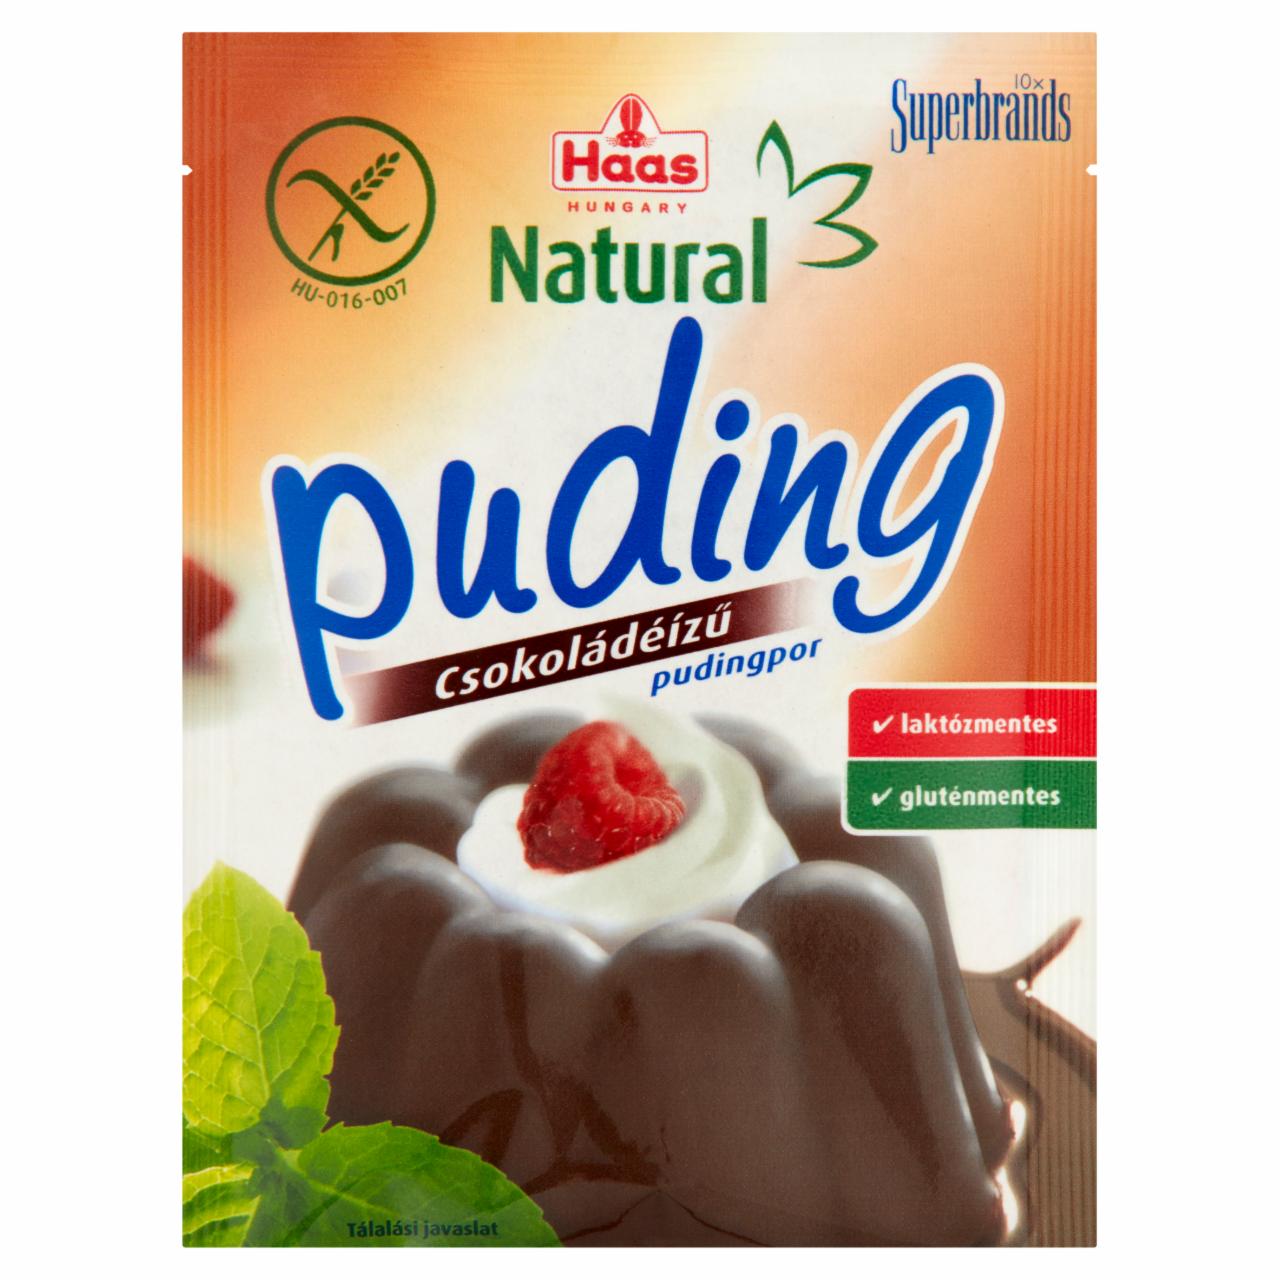 Képek - Haas Natural csokoládéízű pudingpor 44 g